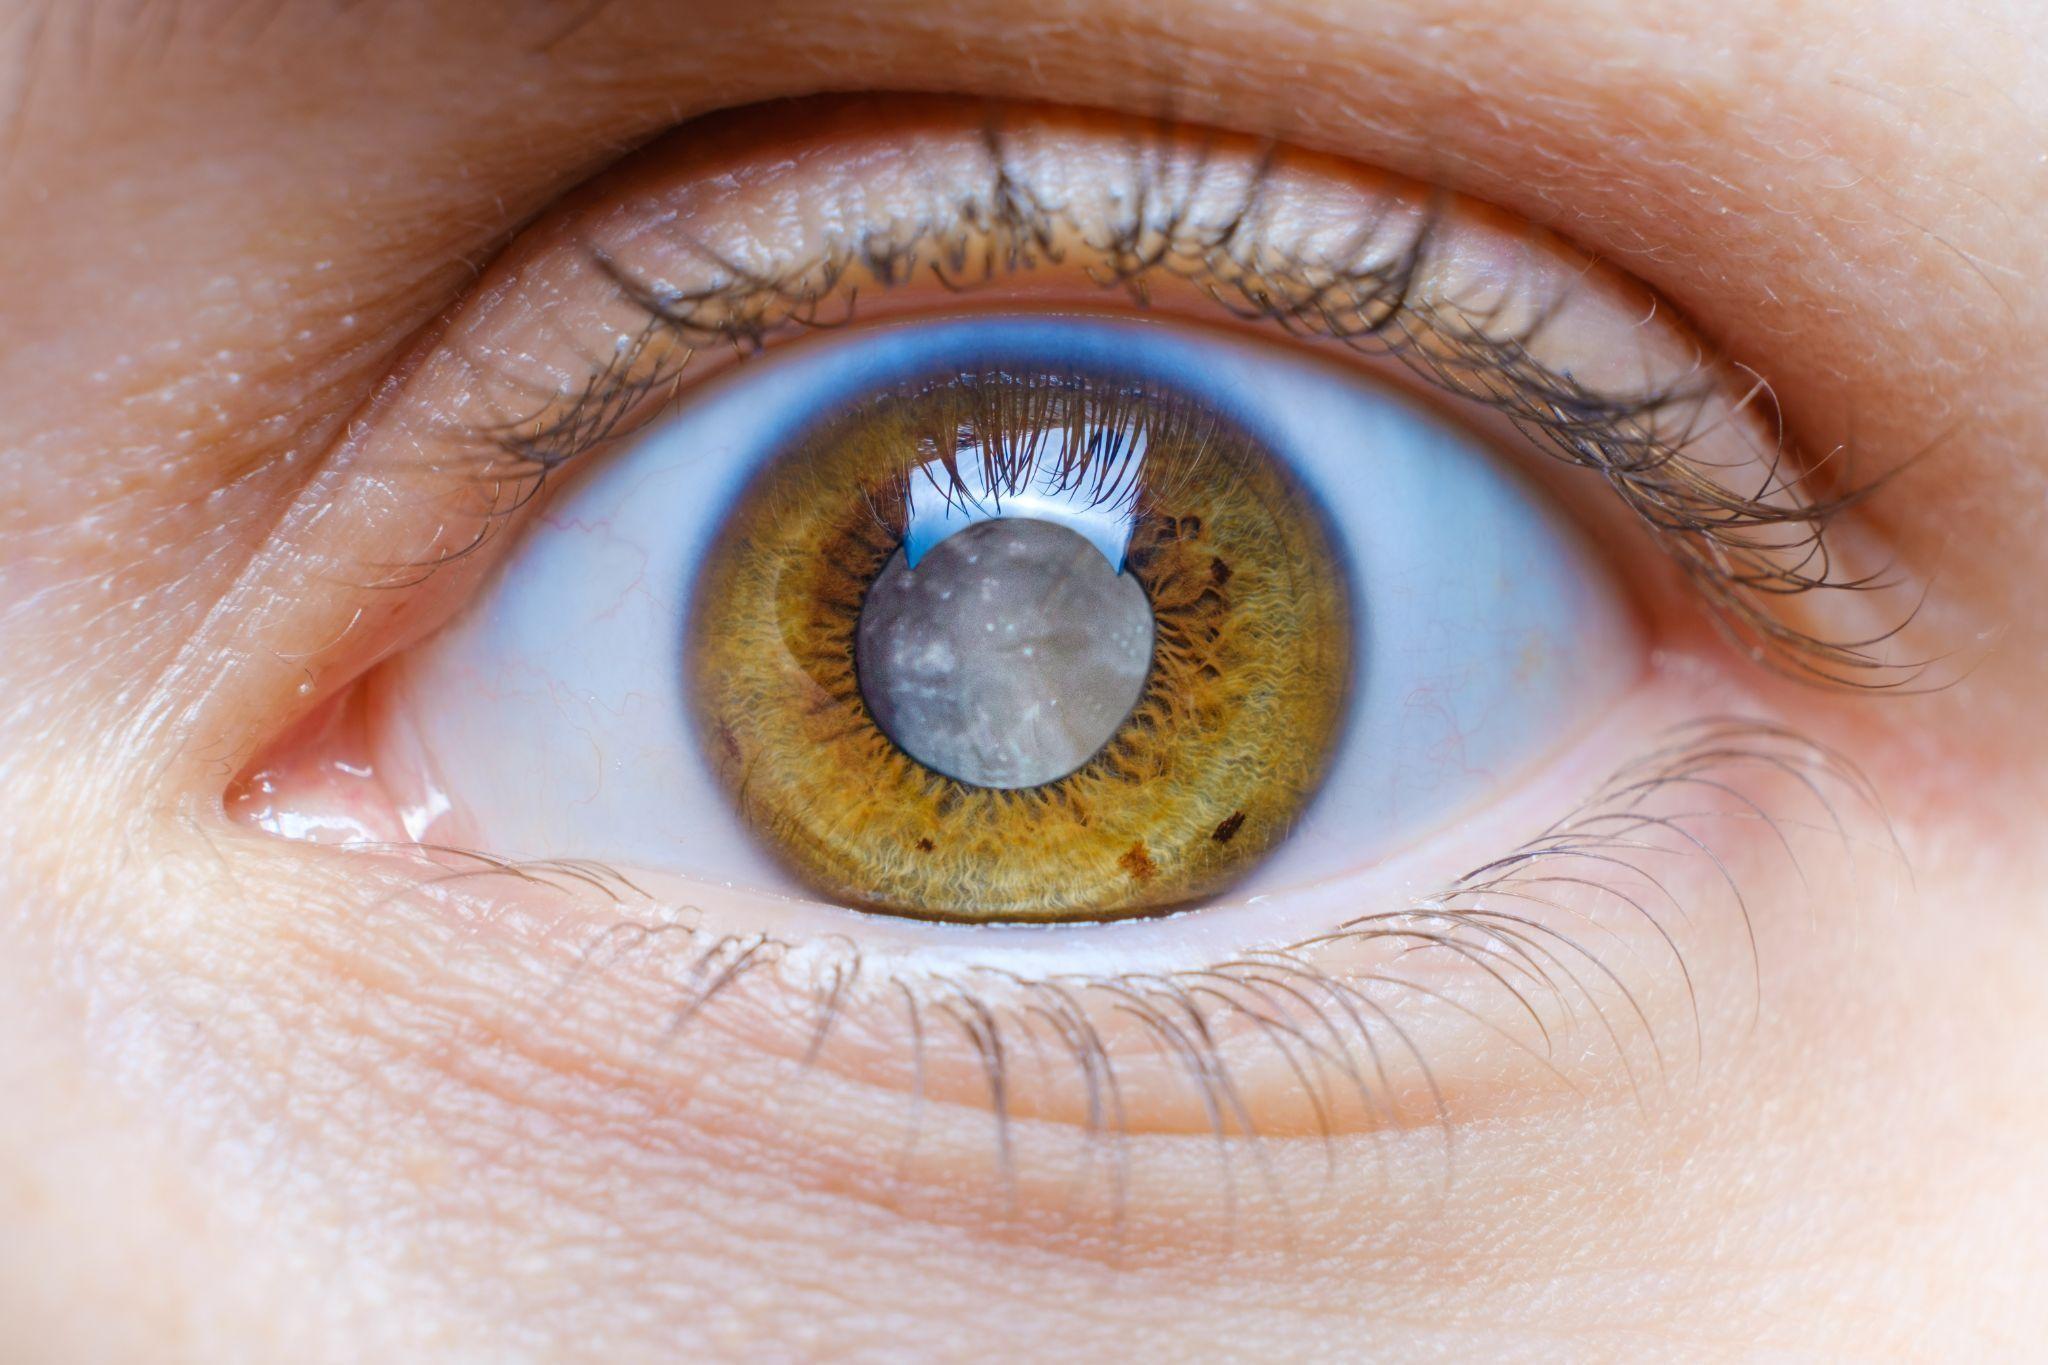 Как определить стадию катаракты?